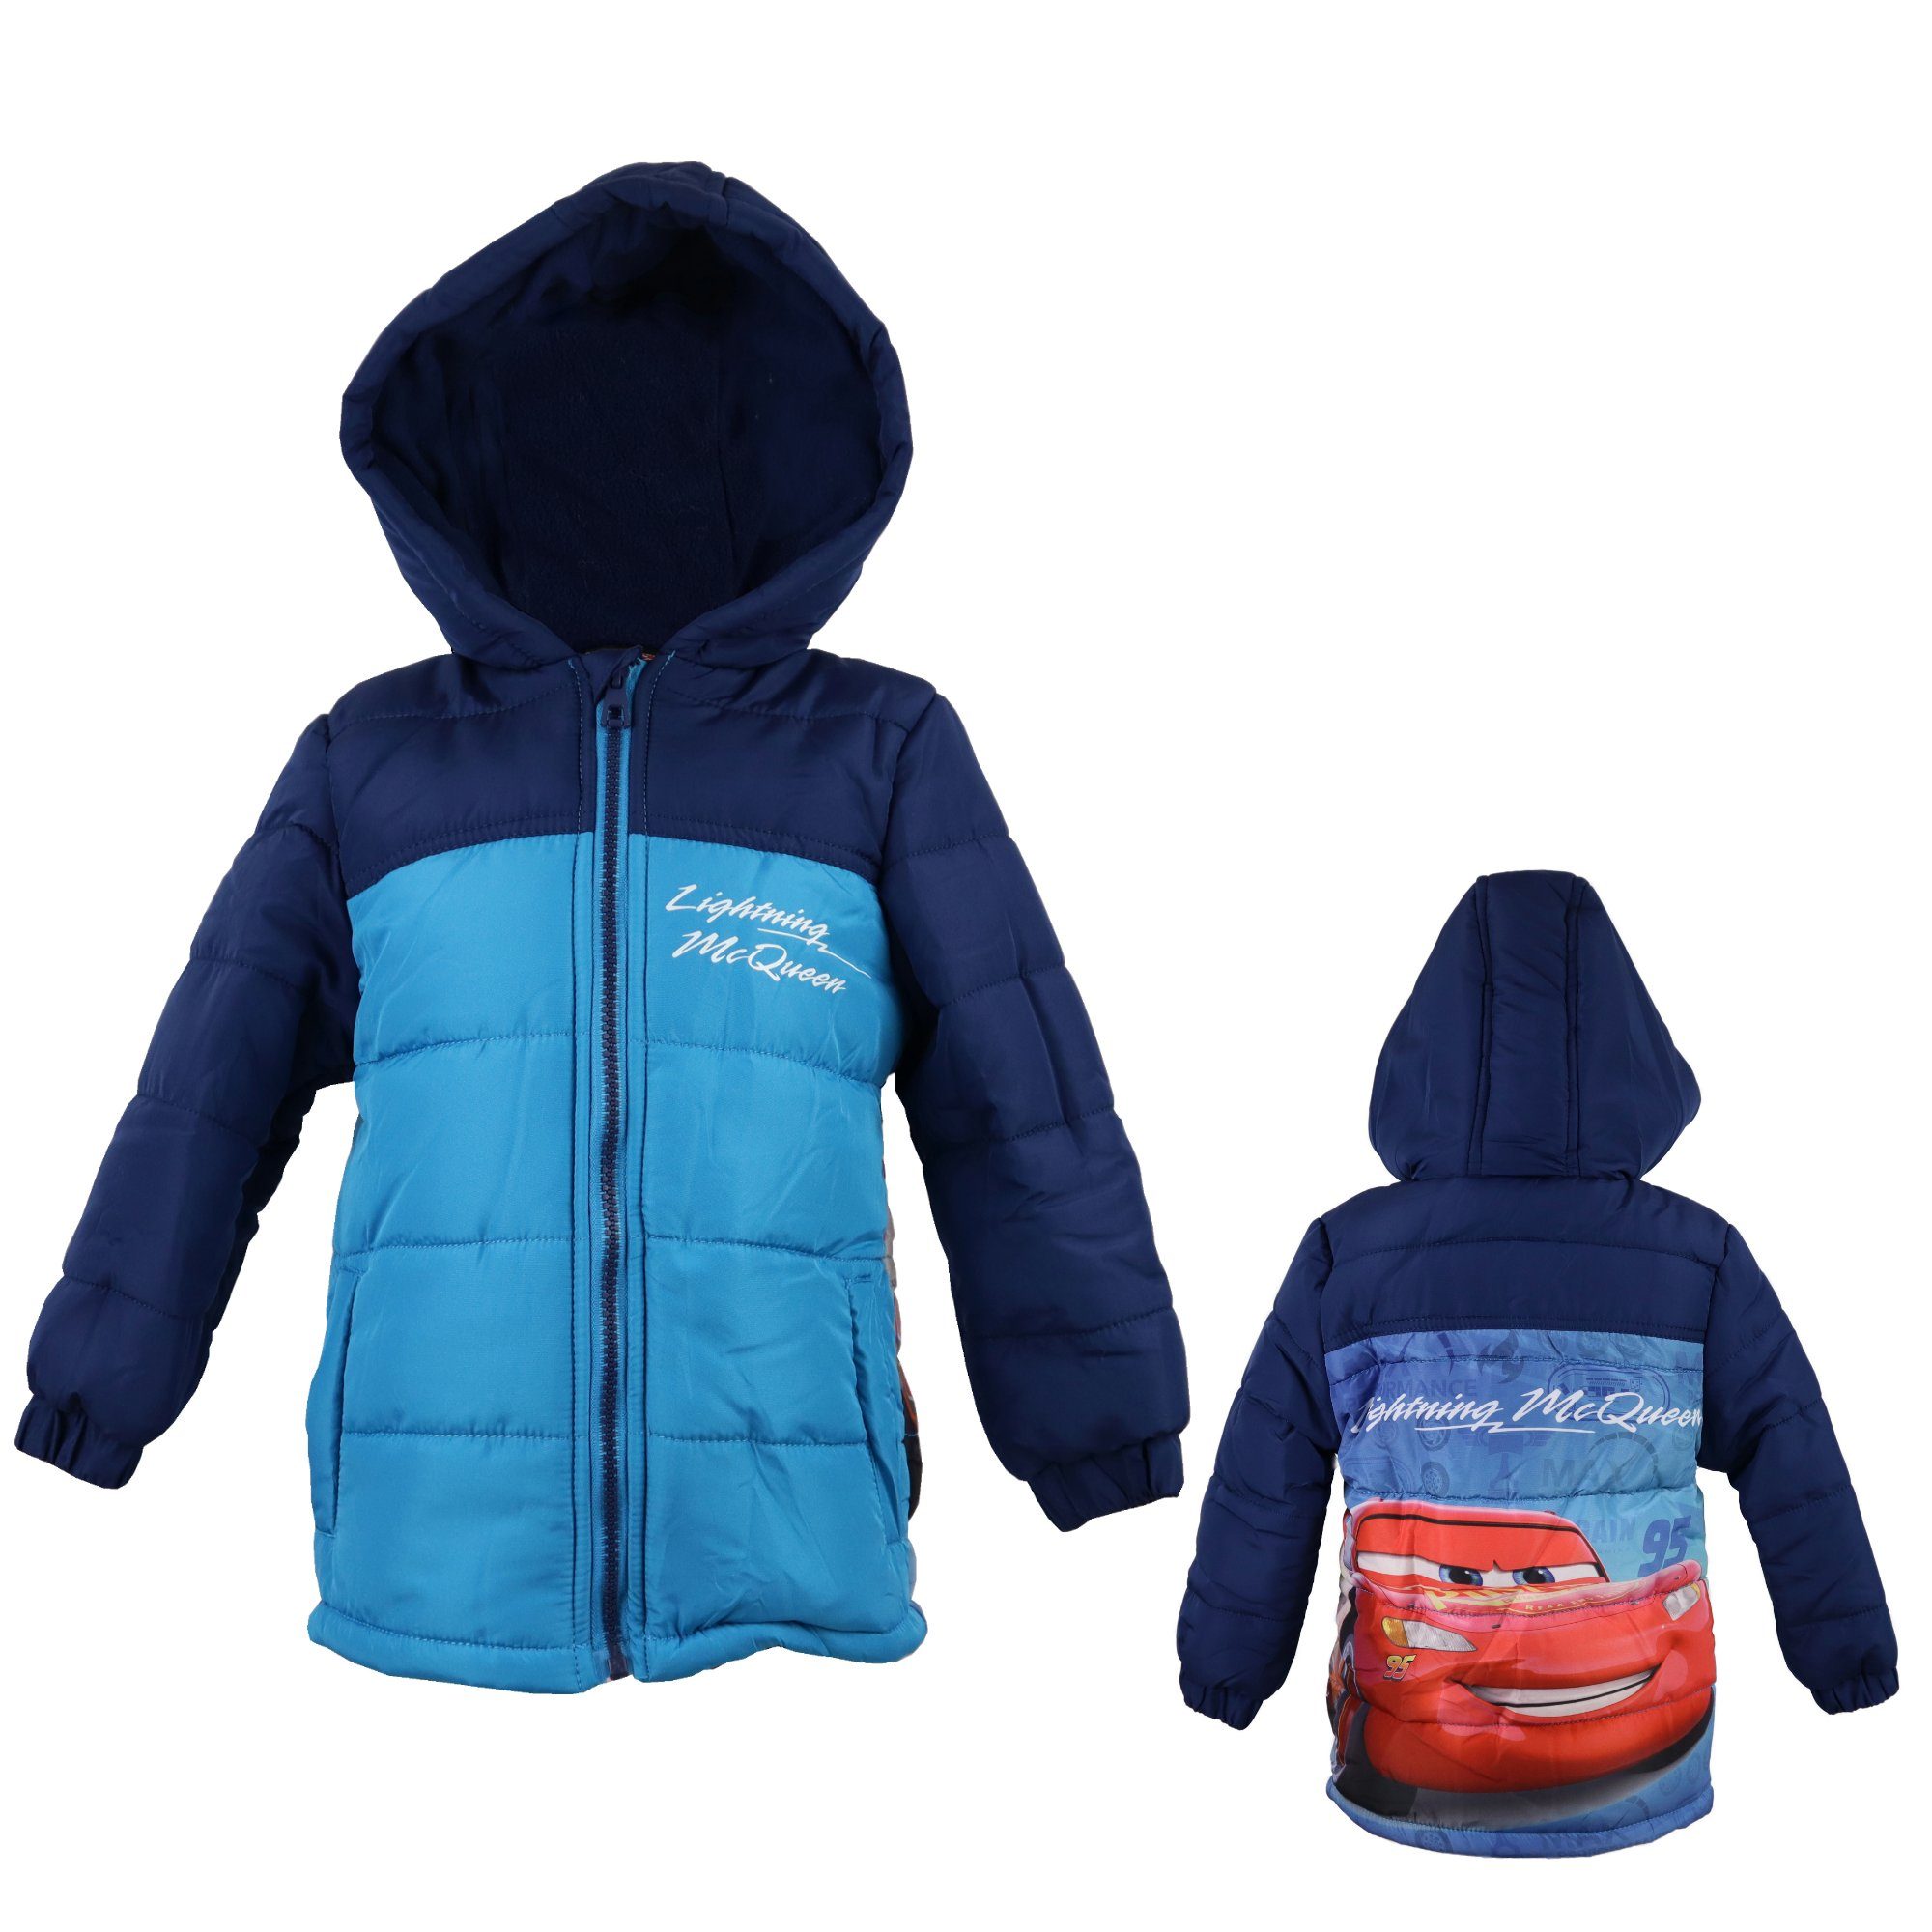 Disney Cars 3 Winterjacke »Lightning McQueen Kinder Jacke« in Blau, Gr. 98  bis 128 online kaufen | OTTO